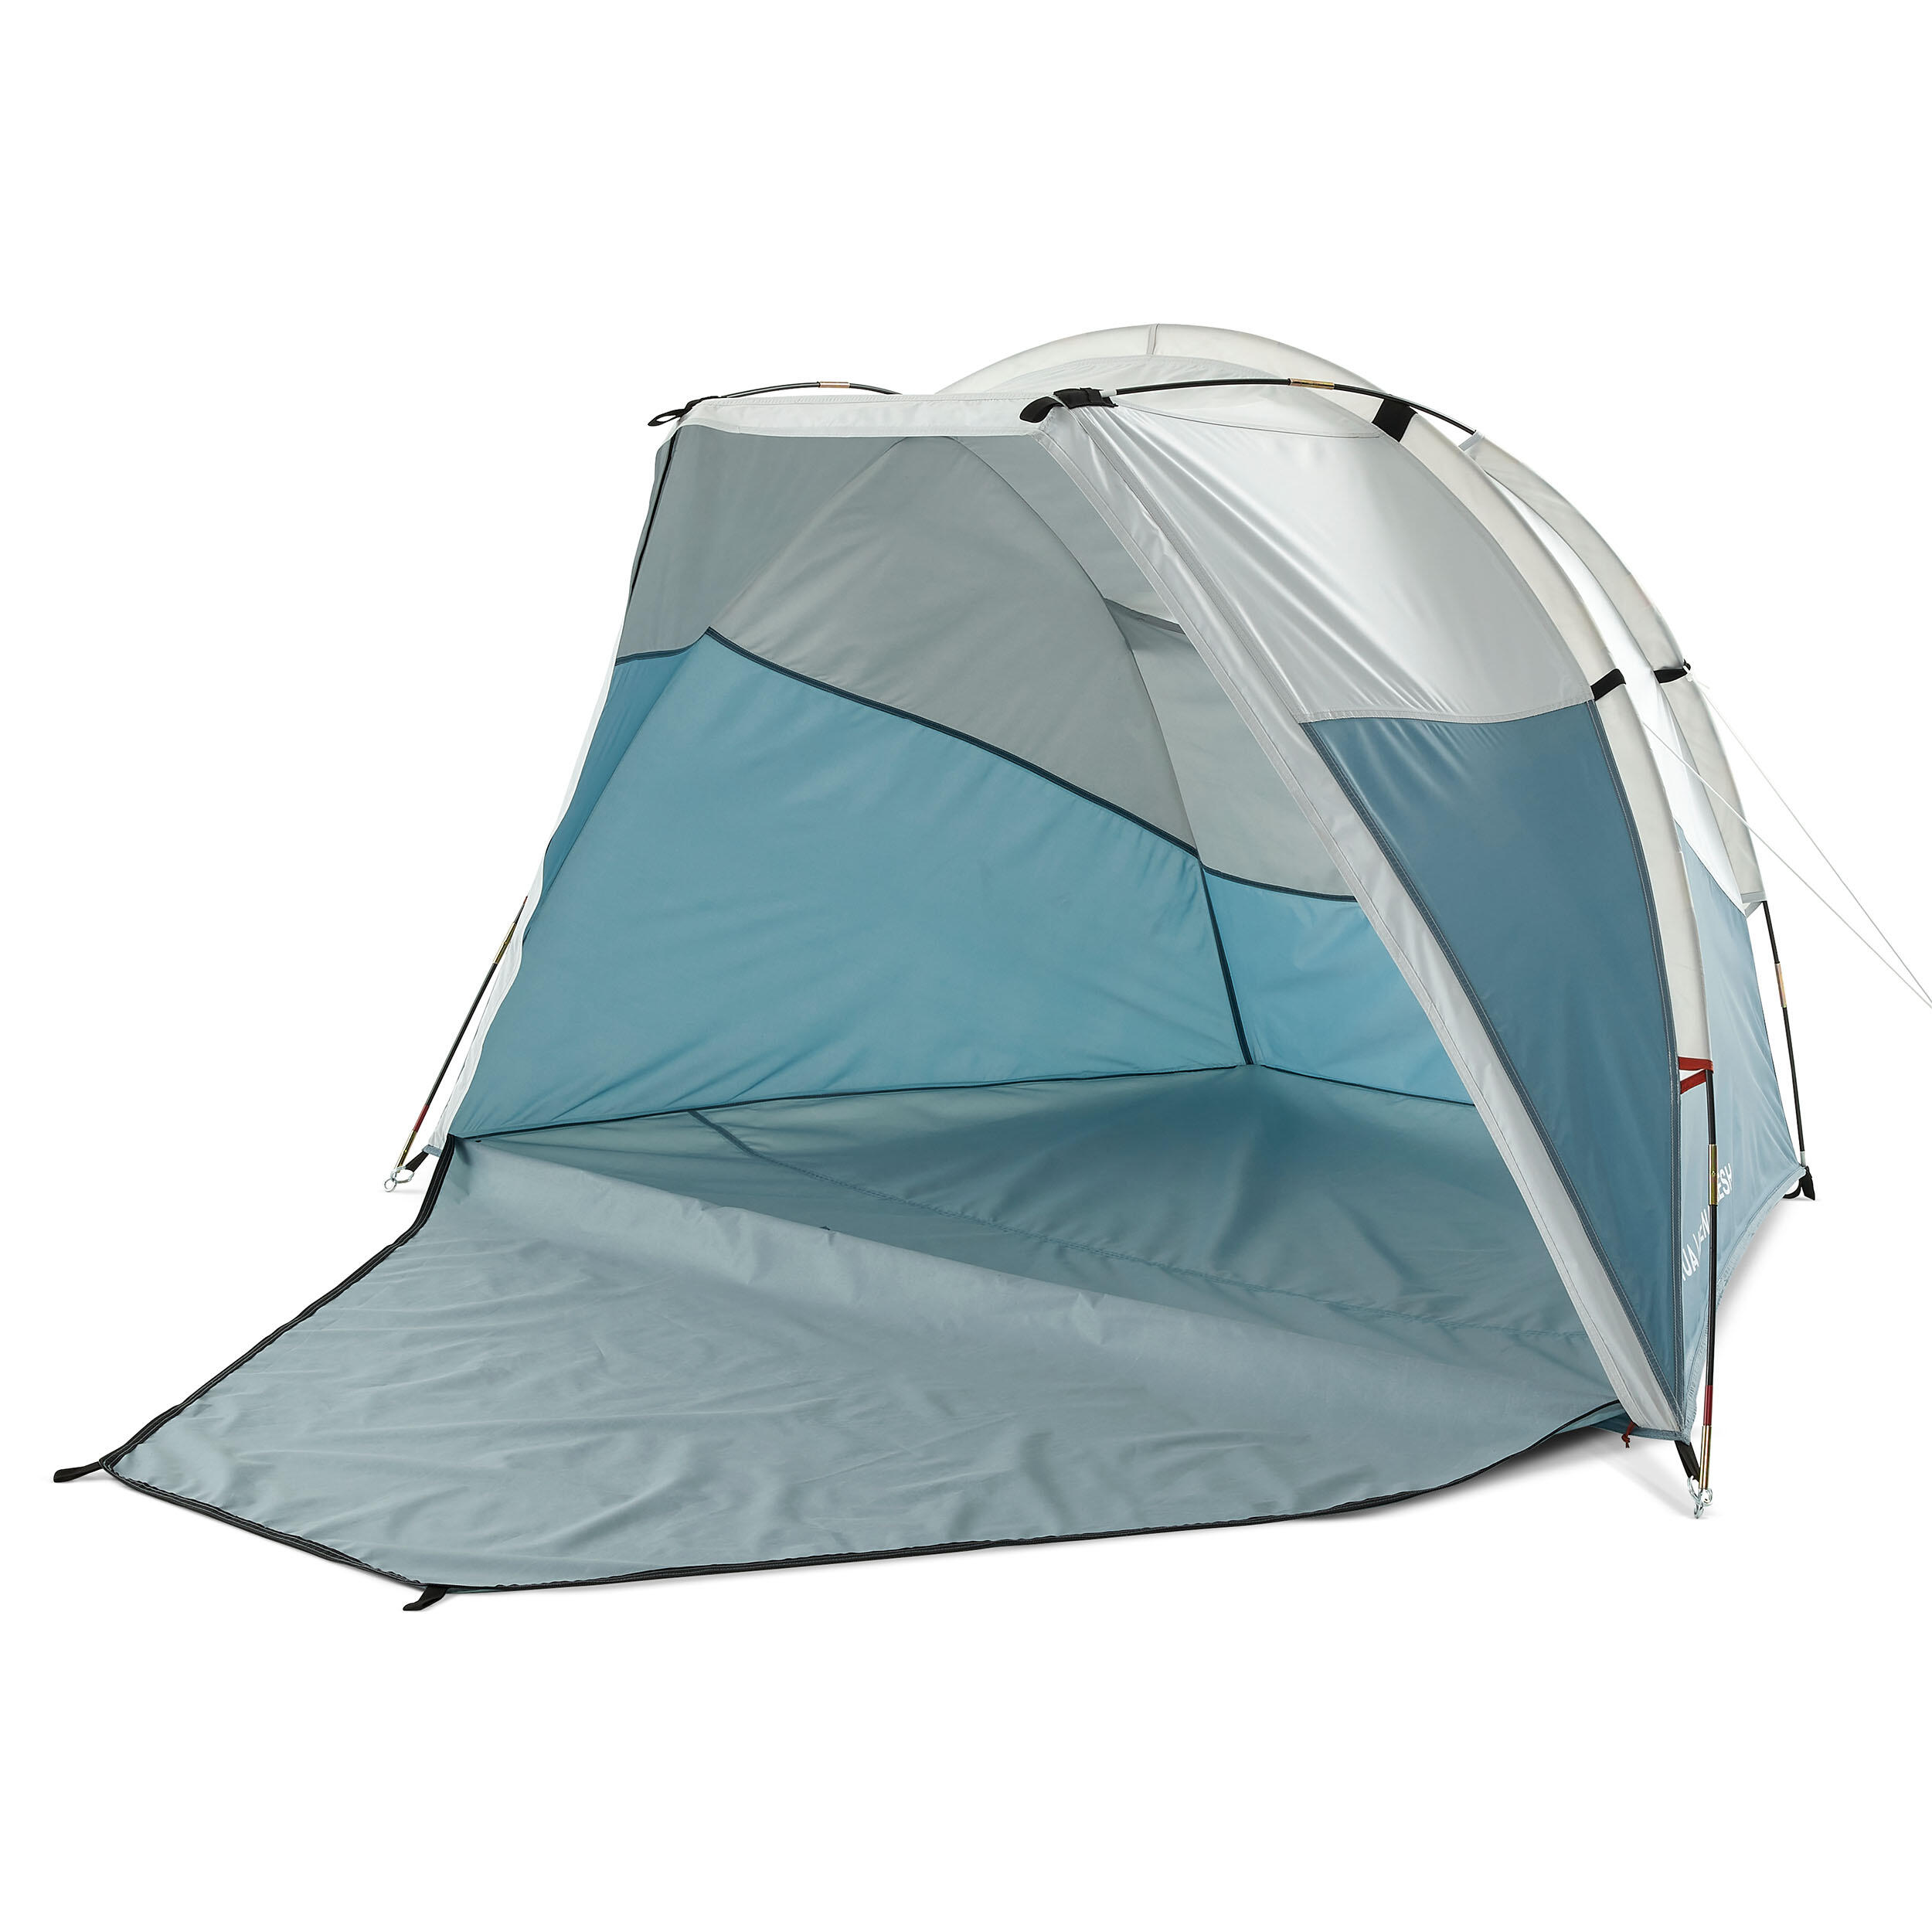 Adăpost cu structură cu bețe camping Arpenaz 0 XL Fresh Compact 2 Adulți decathlon.ro  Costume de baie